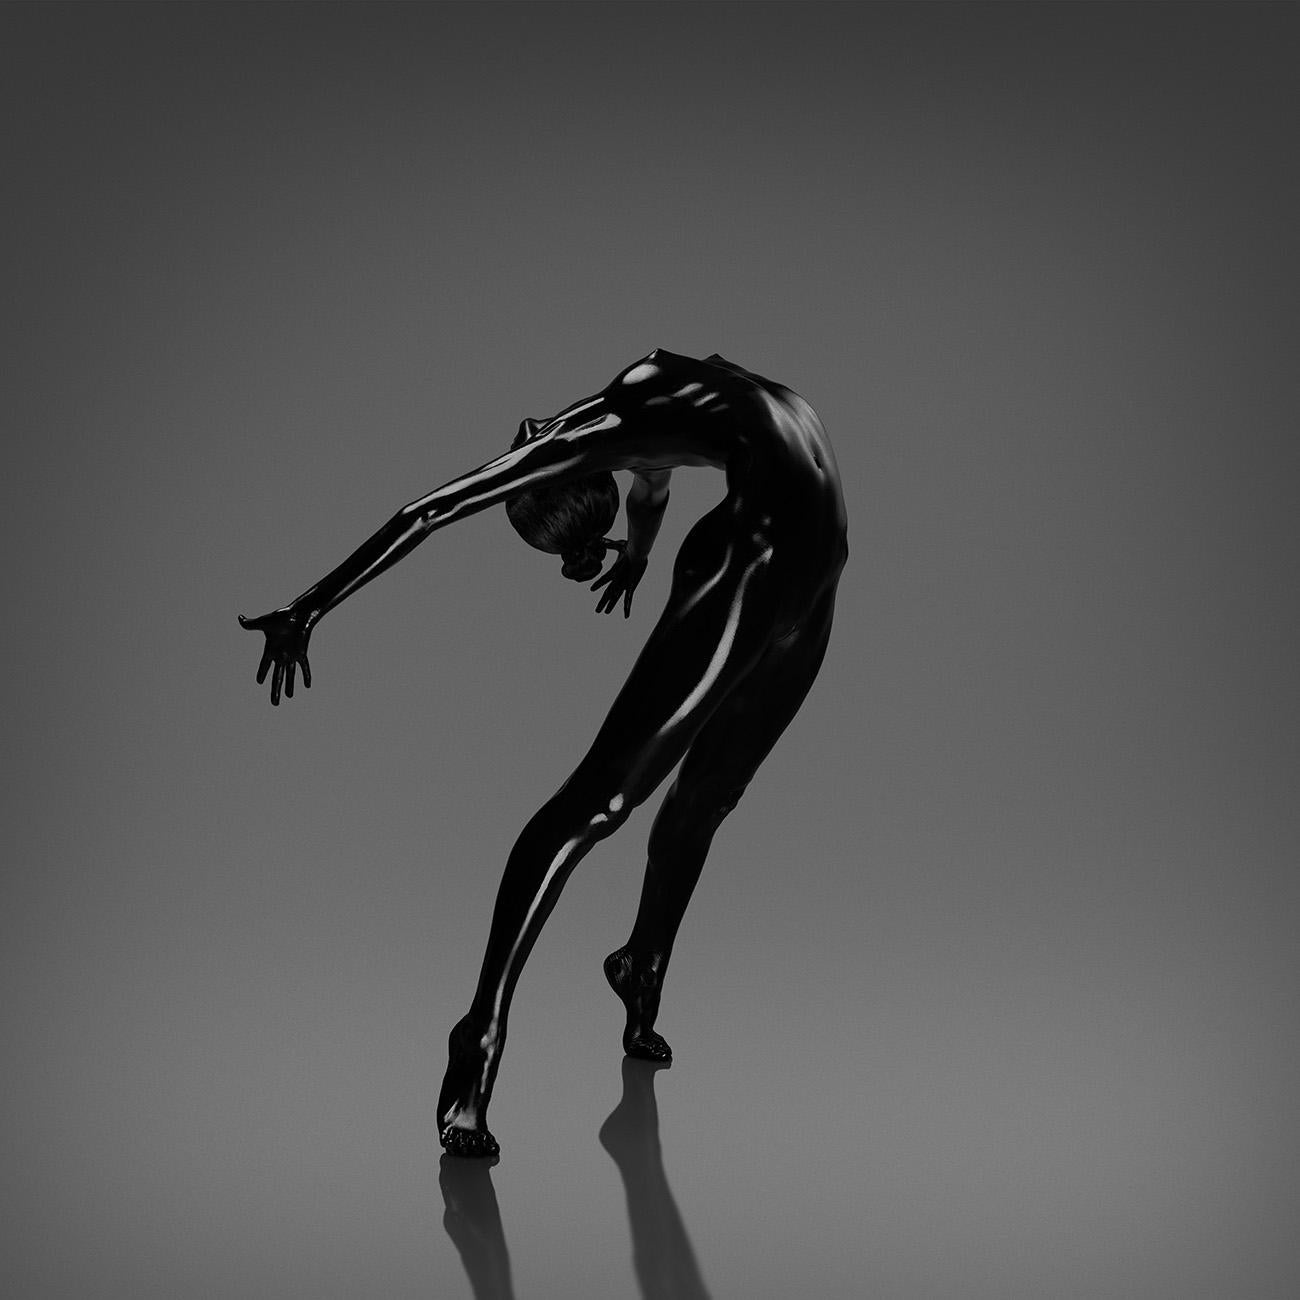 No Titel (No 5) Fotografie Auflage 2/25 32x32 Zoll von Yevgeniy Repiashenko

Jahr, in dem das Foto aufgenommen wurde: 2017

Dieses Bild ist ein Teil der Spirit-Serie.
Das Bild zeigt die eingefrorene Bewegung der Tänzerin. 
Der Körper der Tänzerin